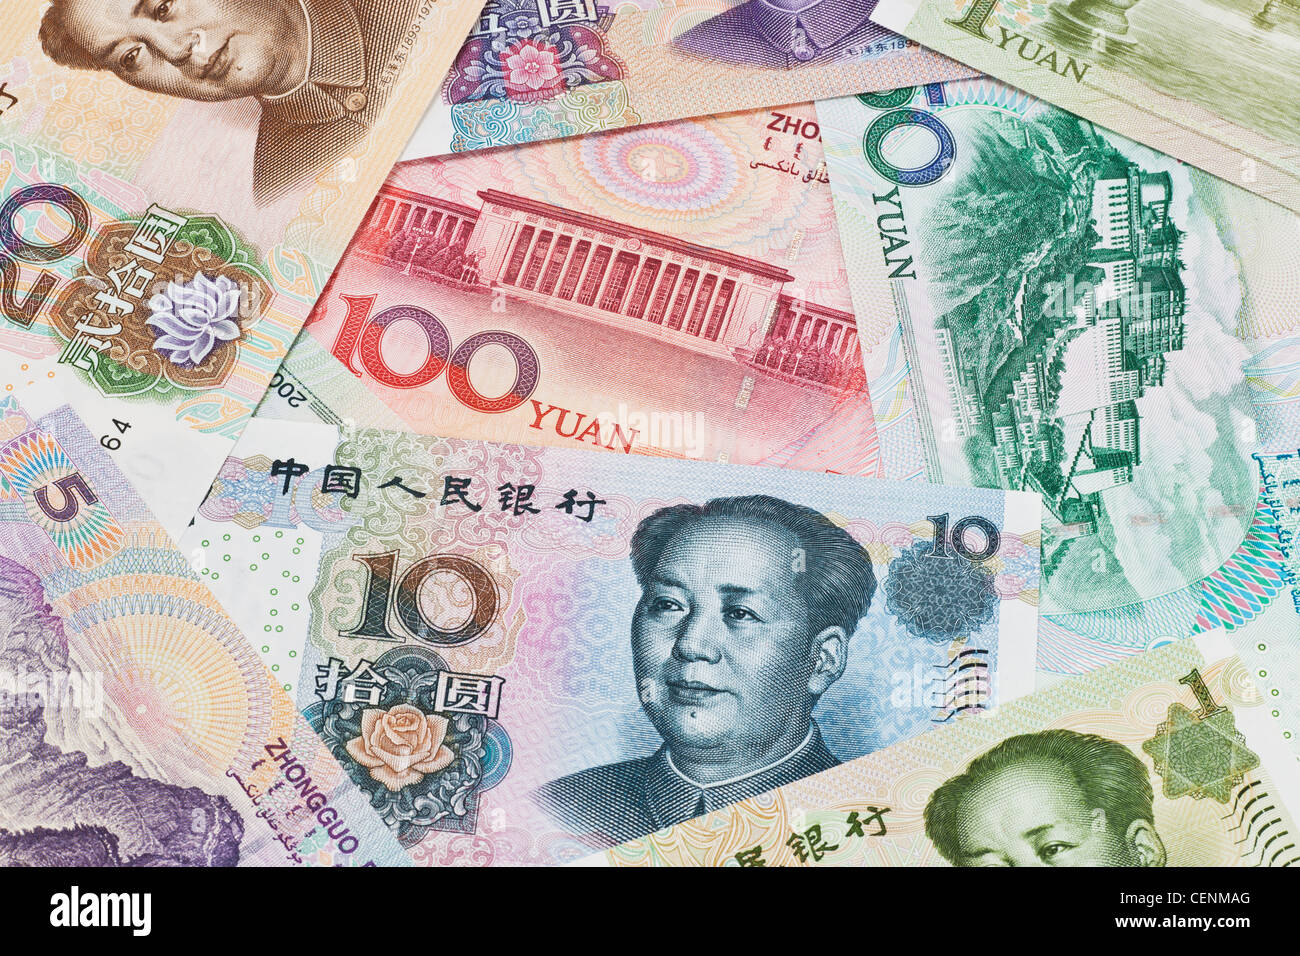 Molti Yuan fatture con il ritratto di Mao Zedong affiancati. Il renminbi, la valuta cinese, è stato introdotto nel 1949 Foto Stock